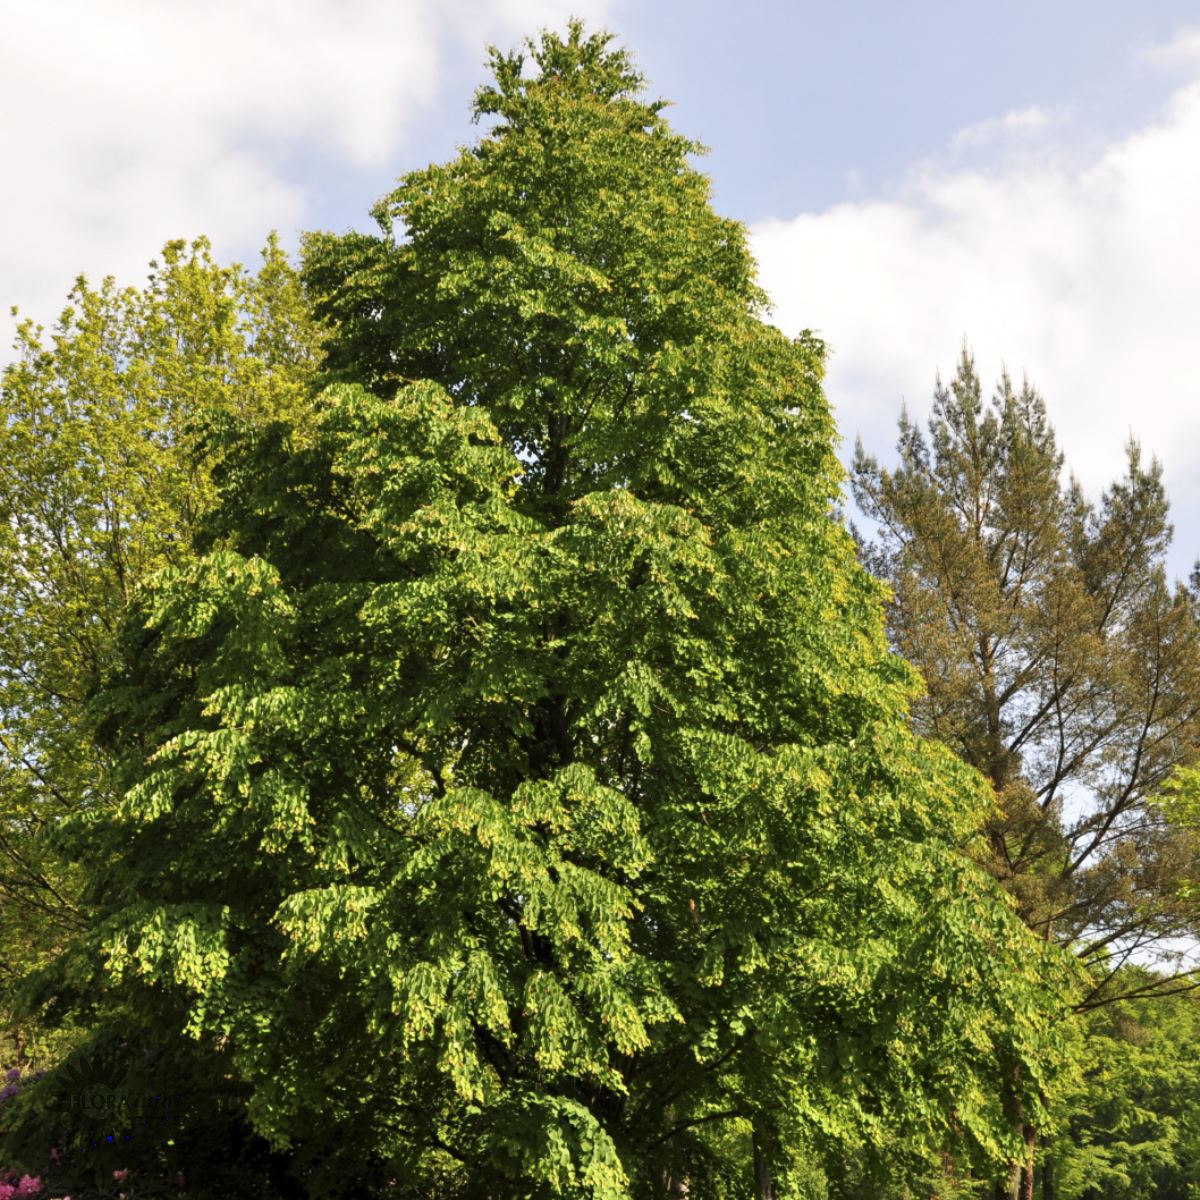 Hjertetræ, også kaldt Katsua, er et løvfældende træ kan efter mange år bliver højt og flot med himmel som baggrund